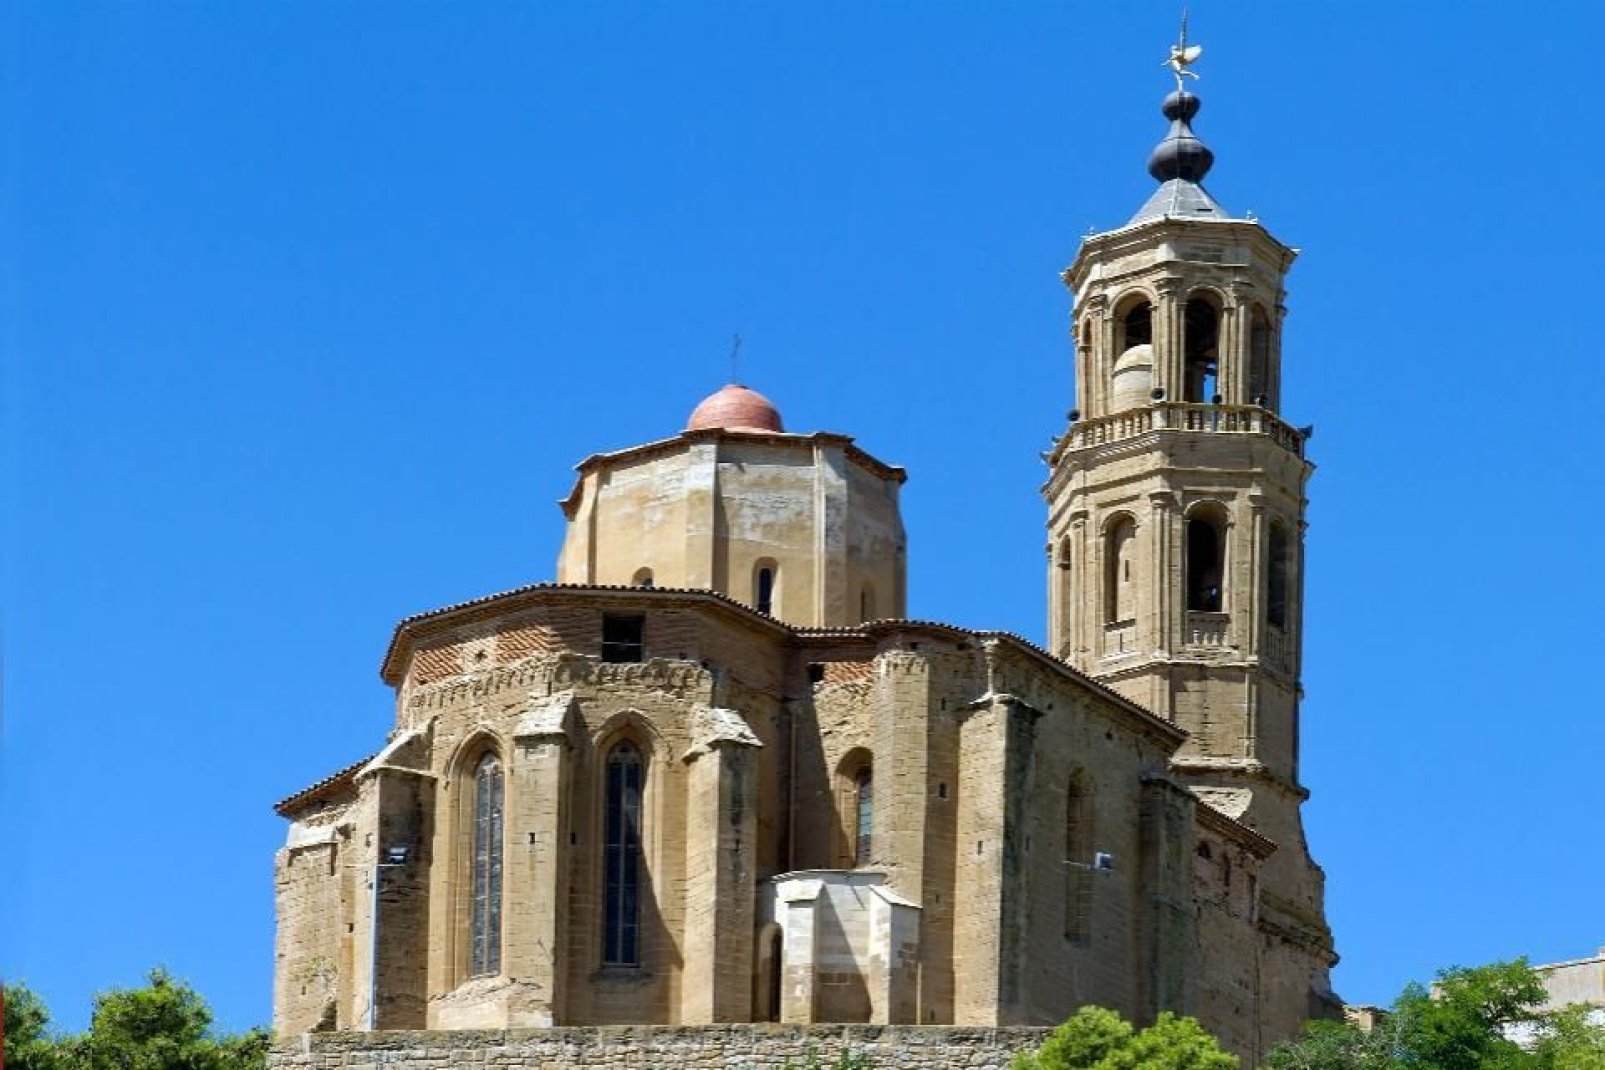 Bien que la cathédrale de la Seu Vella soit le monument emblématique de la ville, cette petite église vaut également le détour.